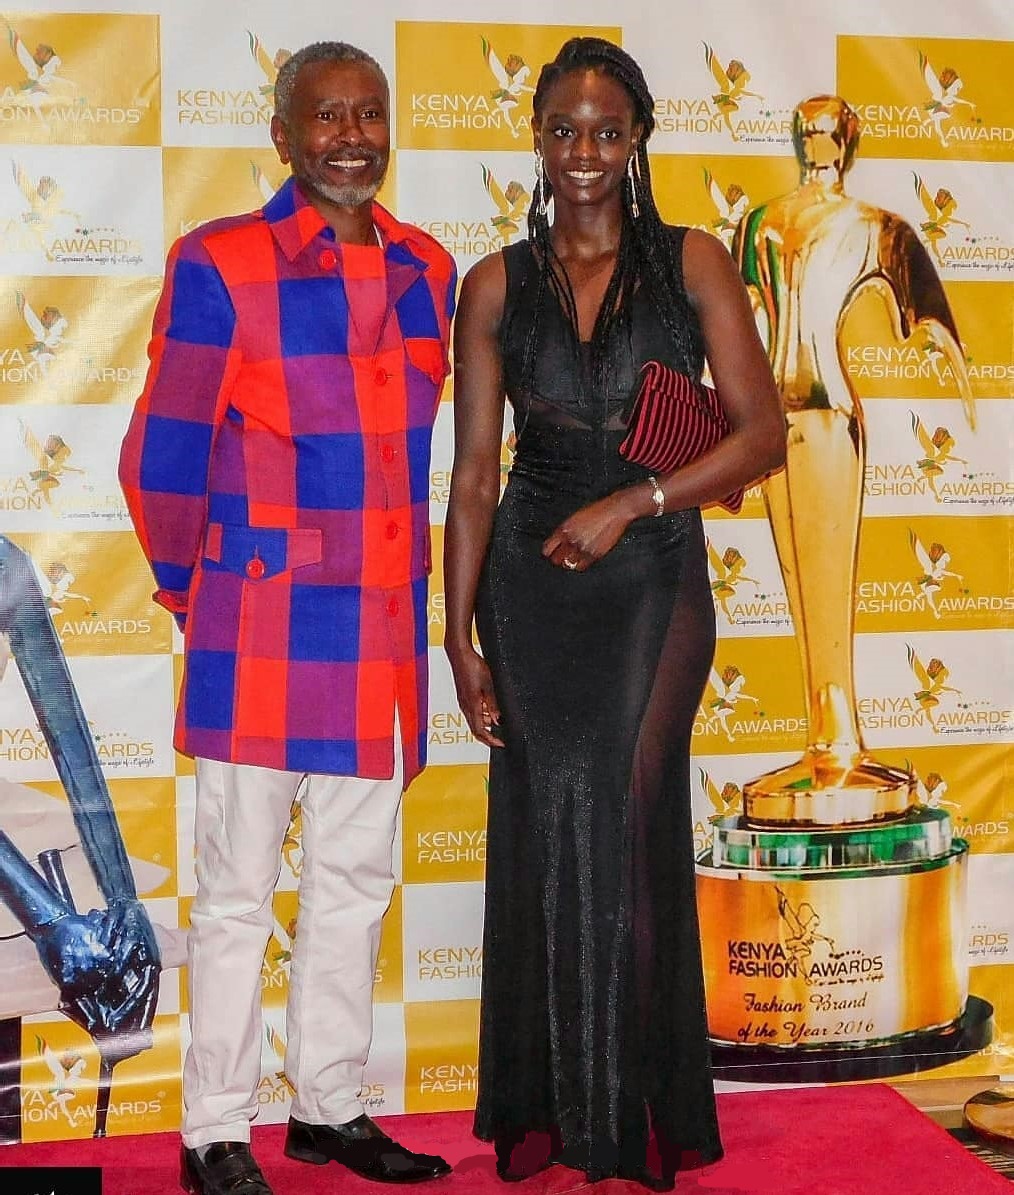 2018-11-29-Ian Mbugua: Legendary Kellywood Actor Attending The Kenya Fashion Awards 2018